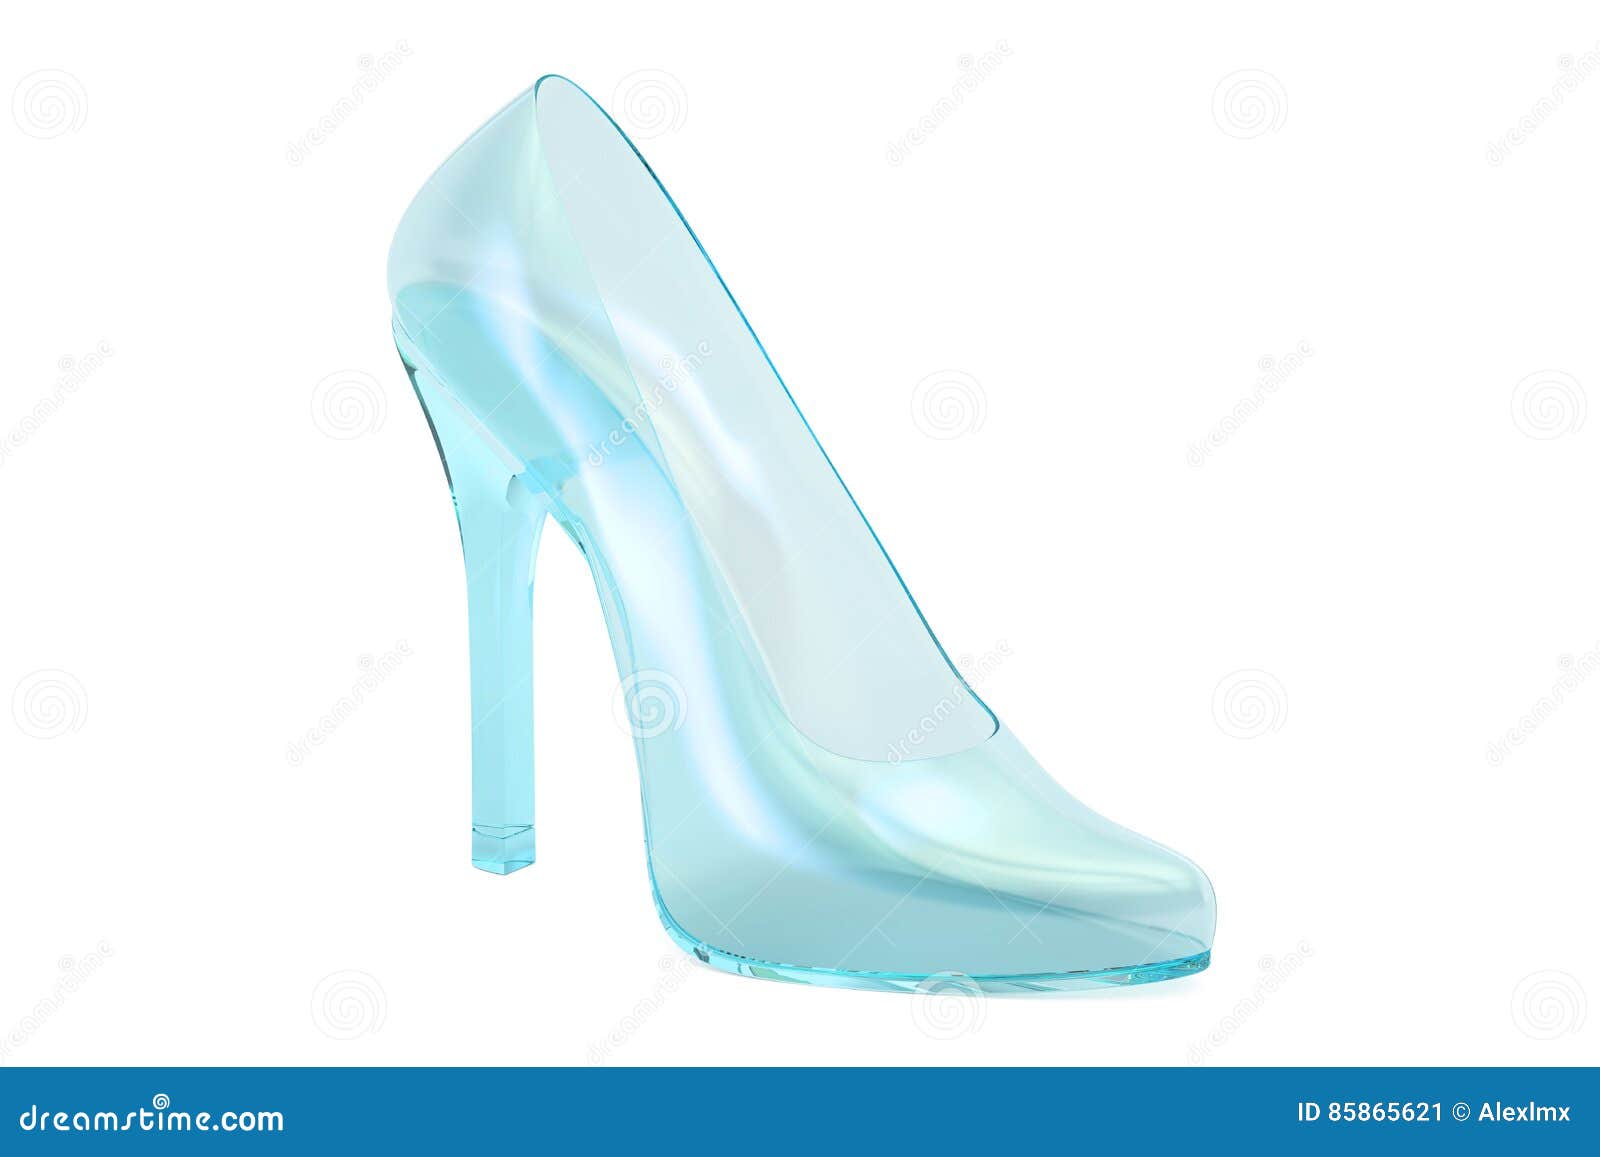 婚鞋女2020新款水晶高跟鞋女细跟尖头亮片法式网红少女鞋新娘鞋 - 三坑日记